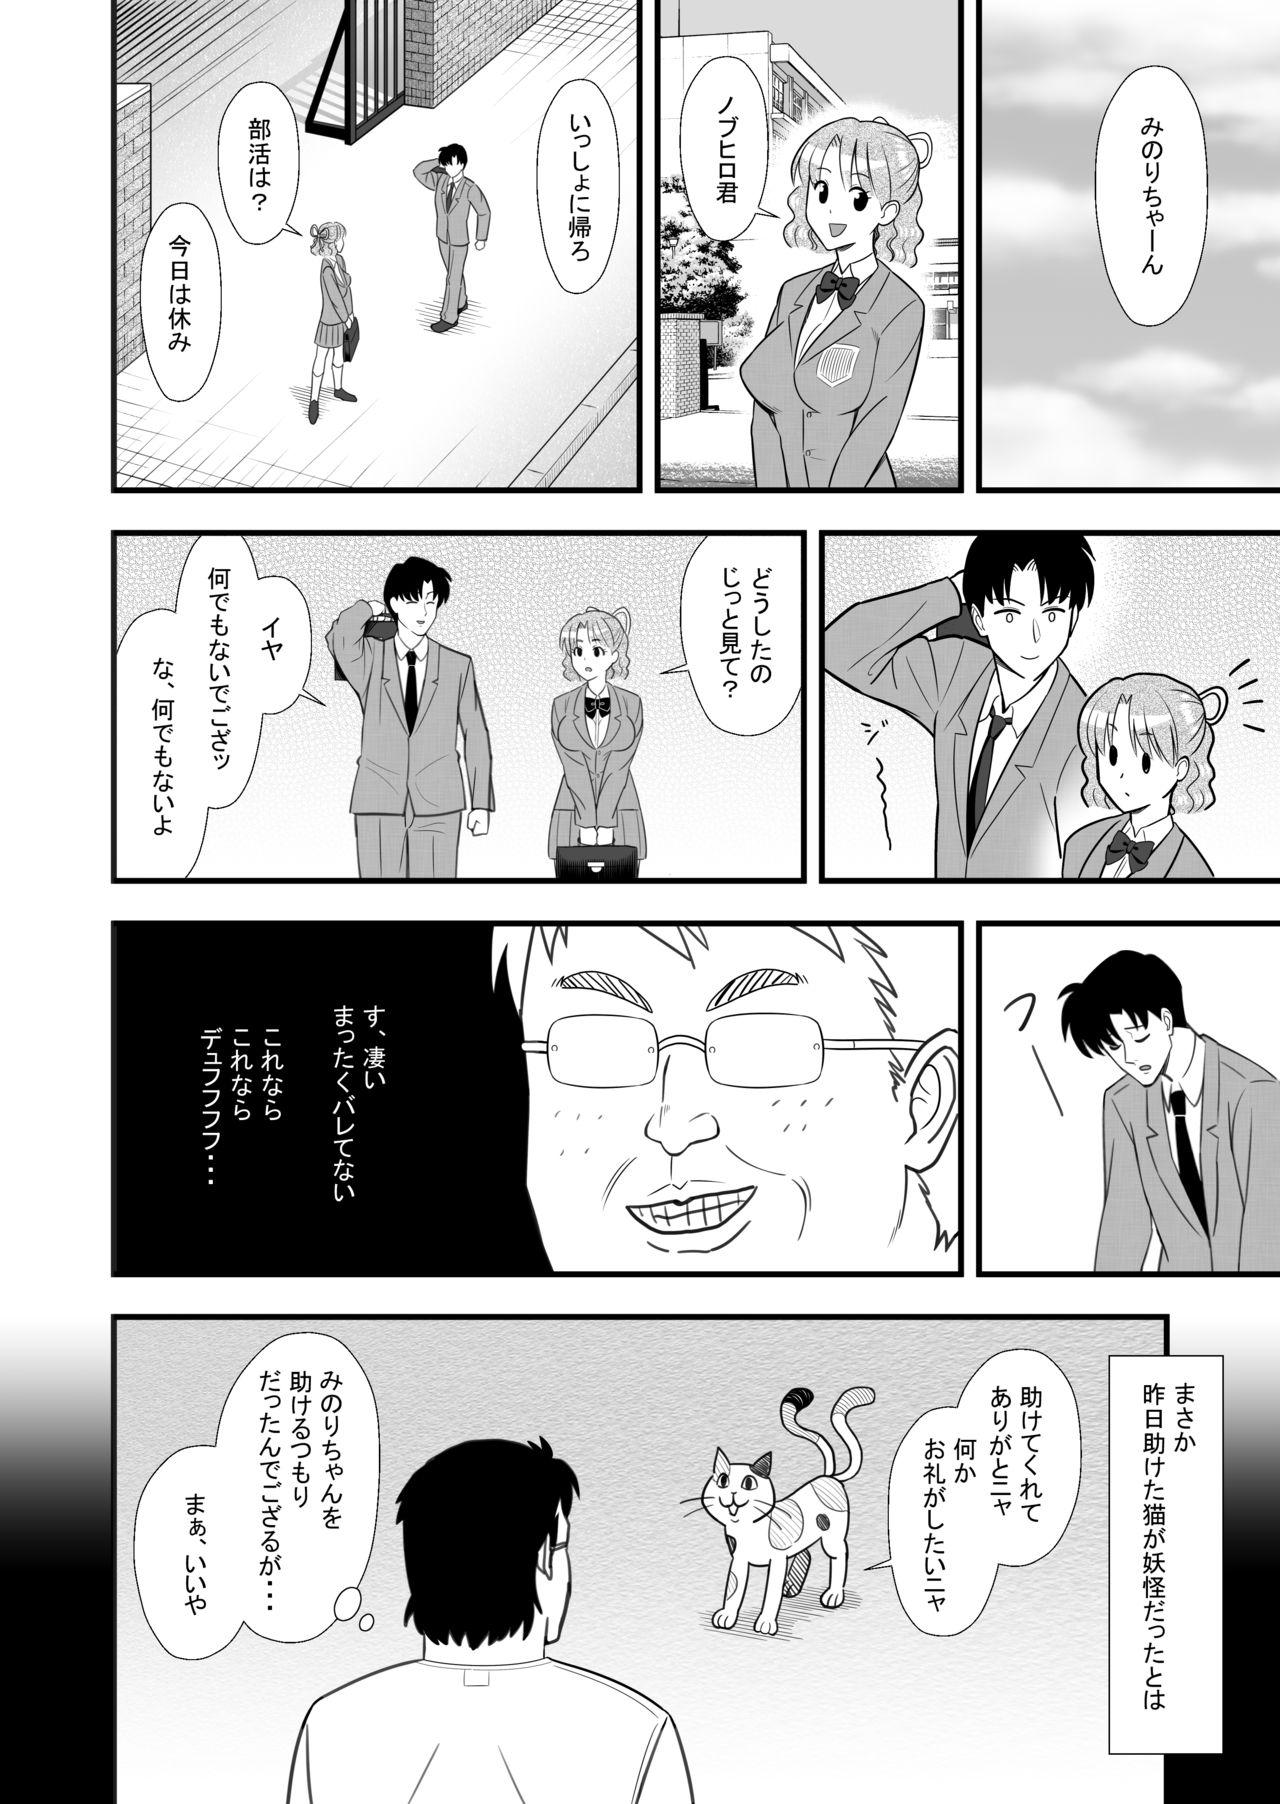 Orgia Omoibito no Shoutai wa Henshin Nouryoku o Te ni Ireta Kimoota datta! - Original Fun - Page 8